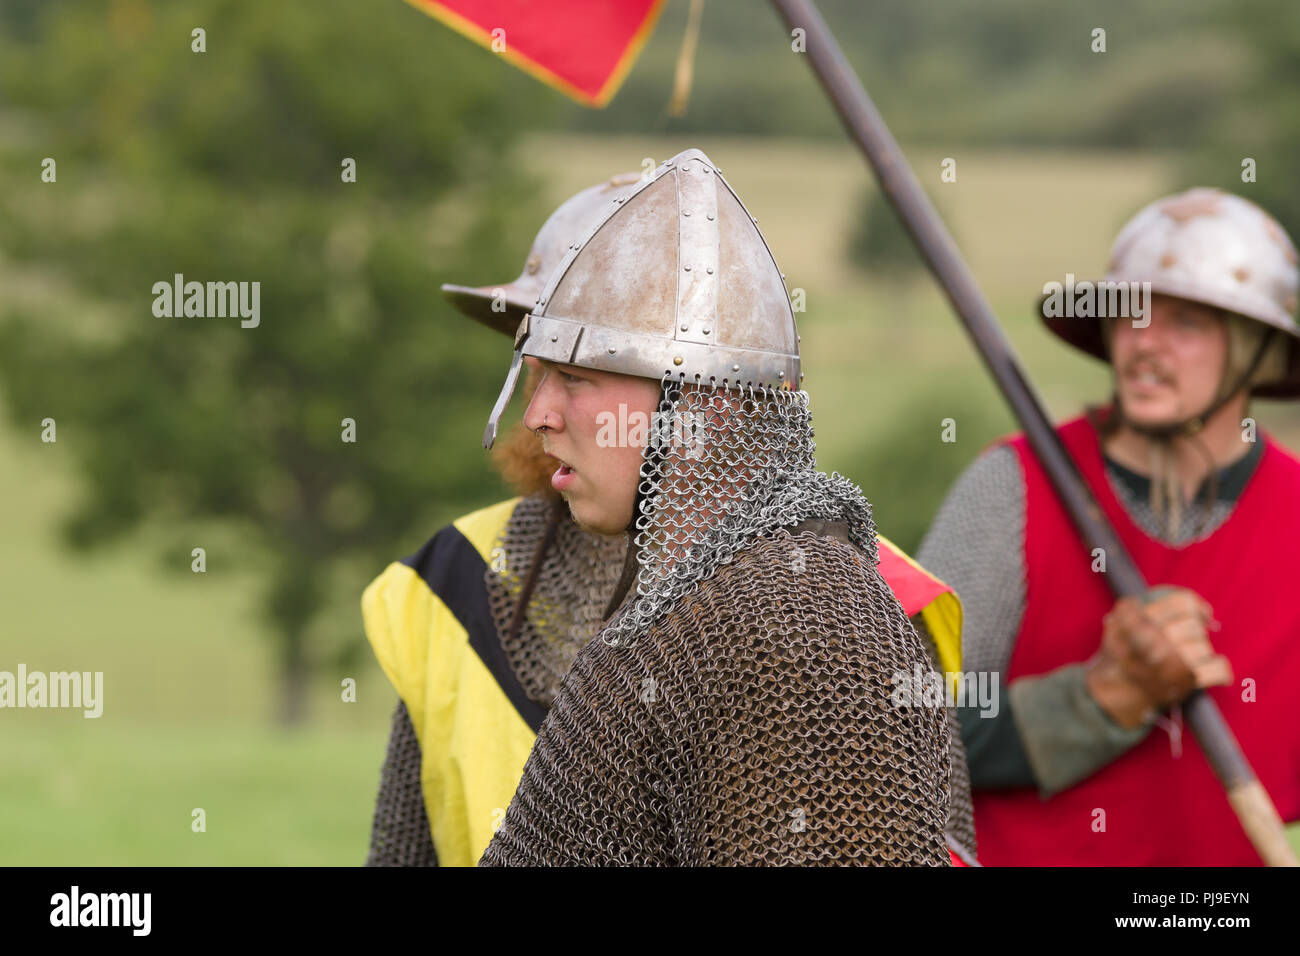 Mittelalterliche Schlacht Re-enactment mit Männern tragen einen Spangenhelm Helm und Kettenpost Aventail oder camail, um den Hals zu schützen Stockfoto